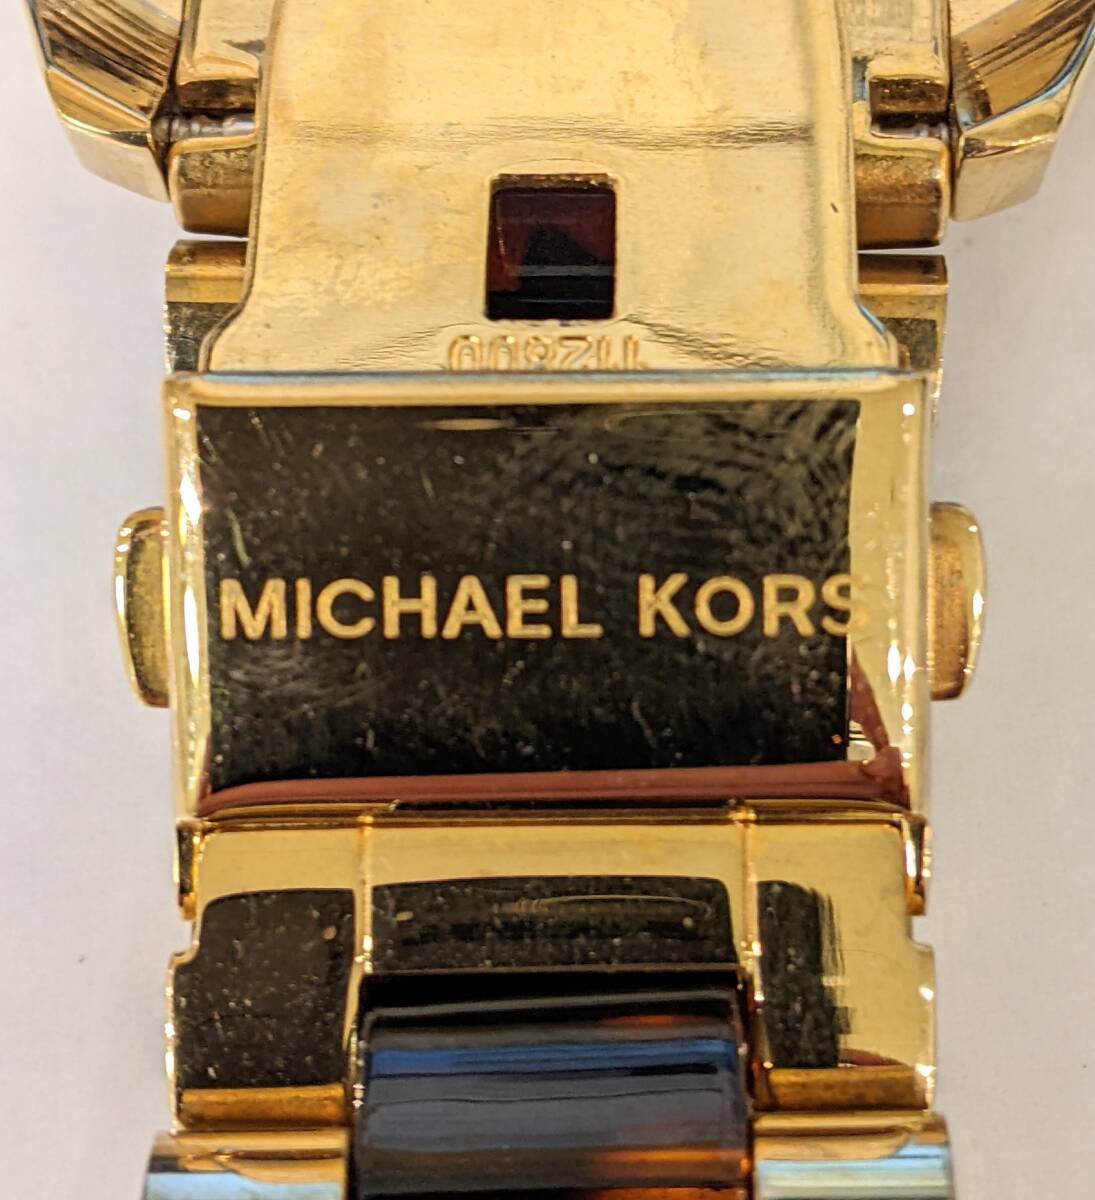 【11121】MICHAEL KORS マイケルコース メンズ クオーツ 腕時計 MK-5696 アナログ 3針 クロノグラフ デイト SS ブランド時計の画像6